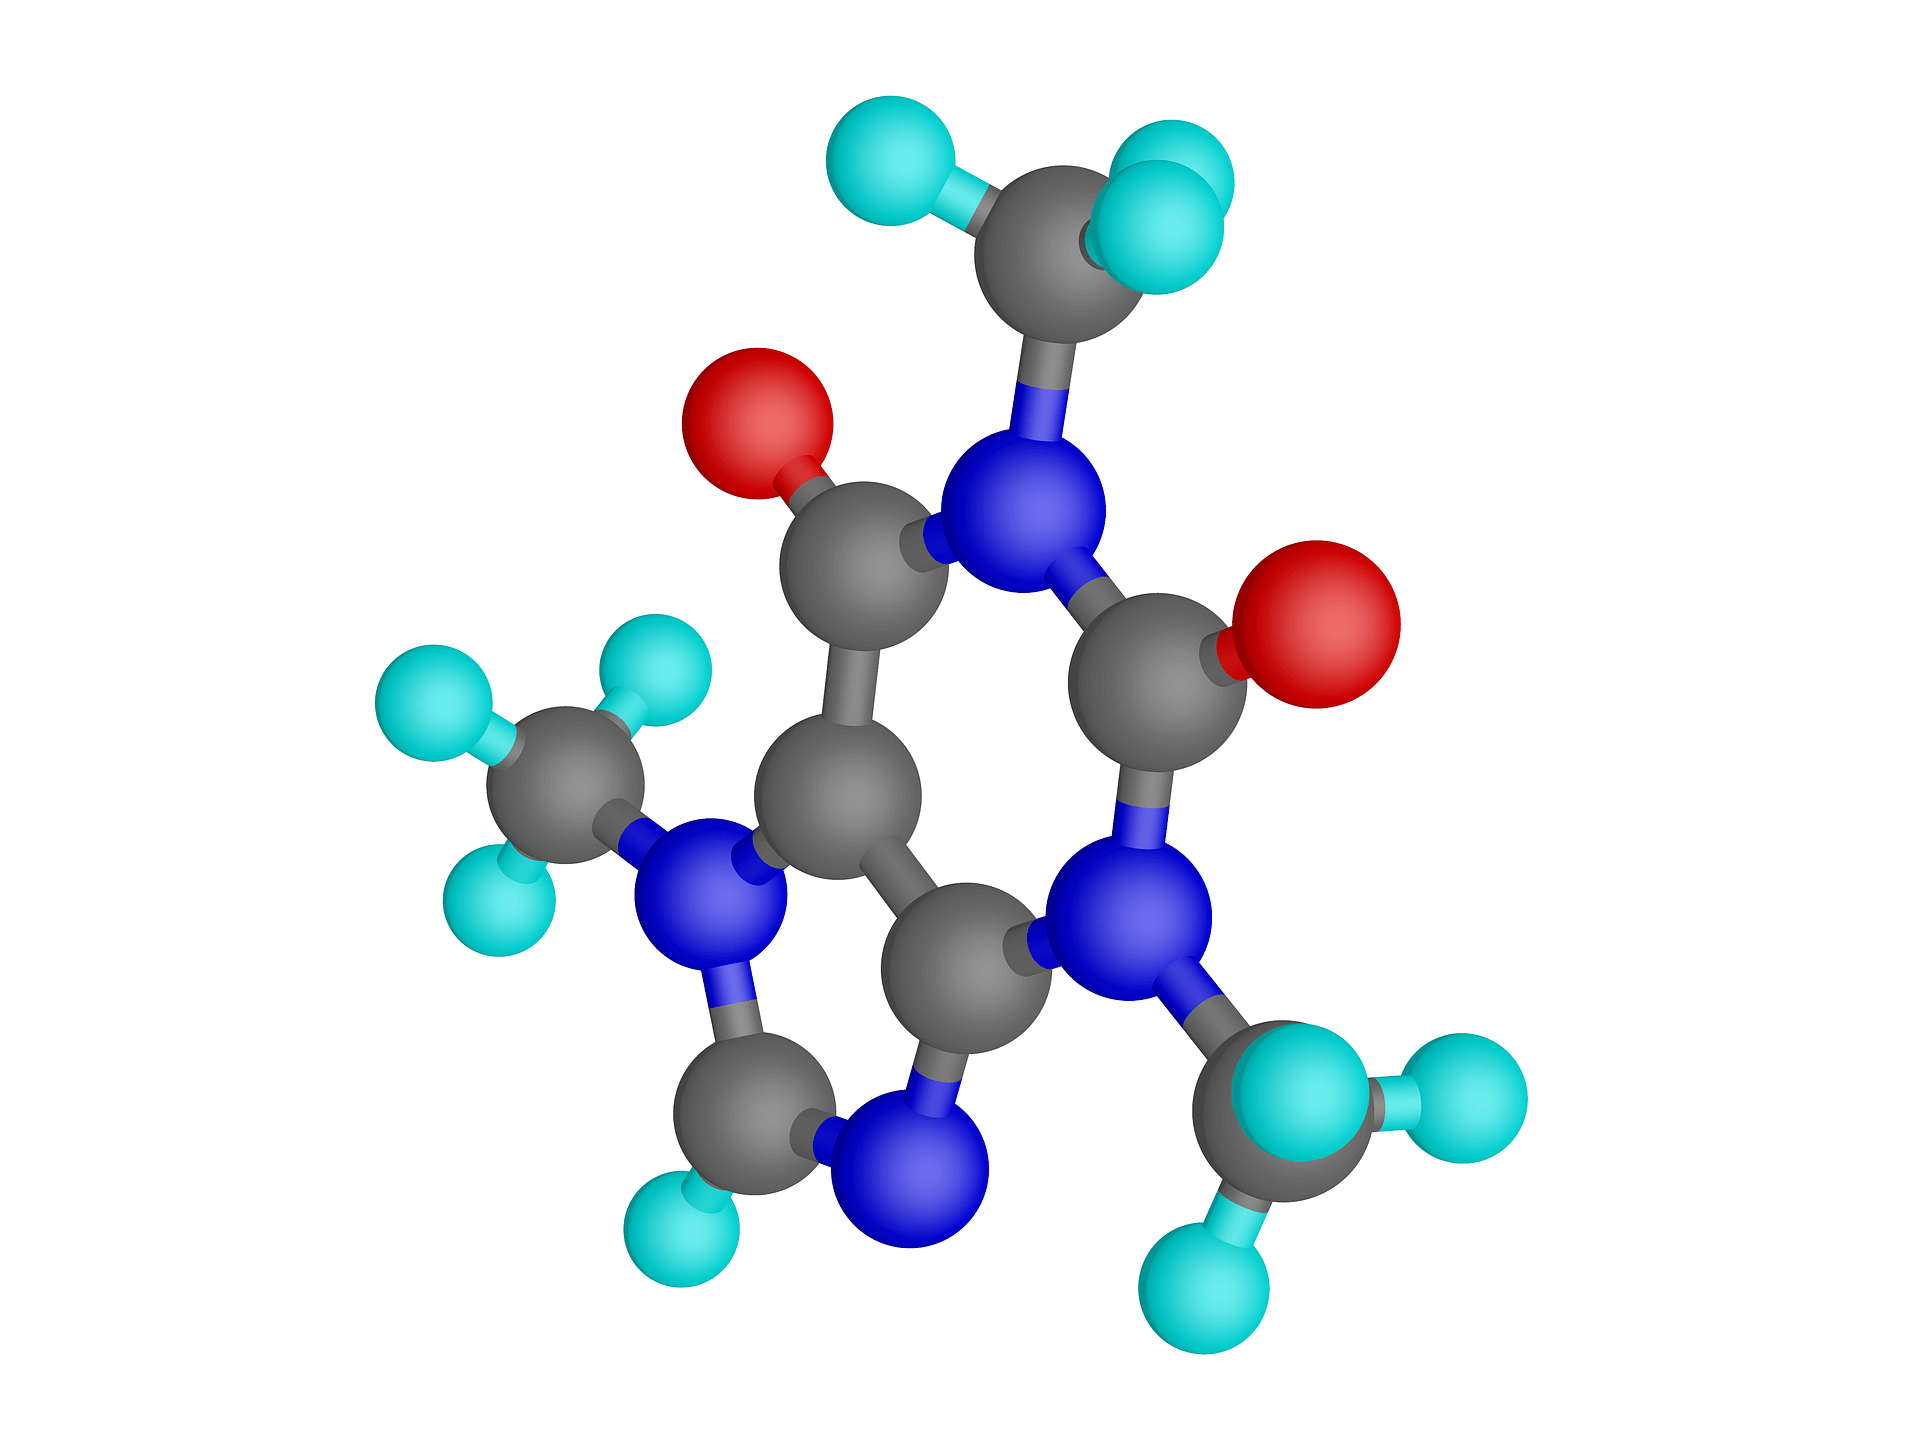 A caffeine molecule